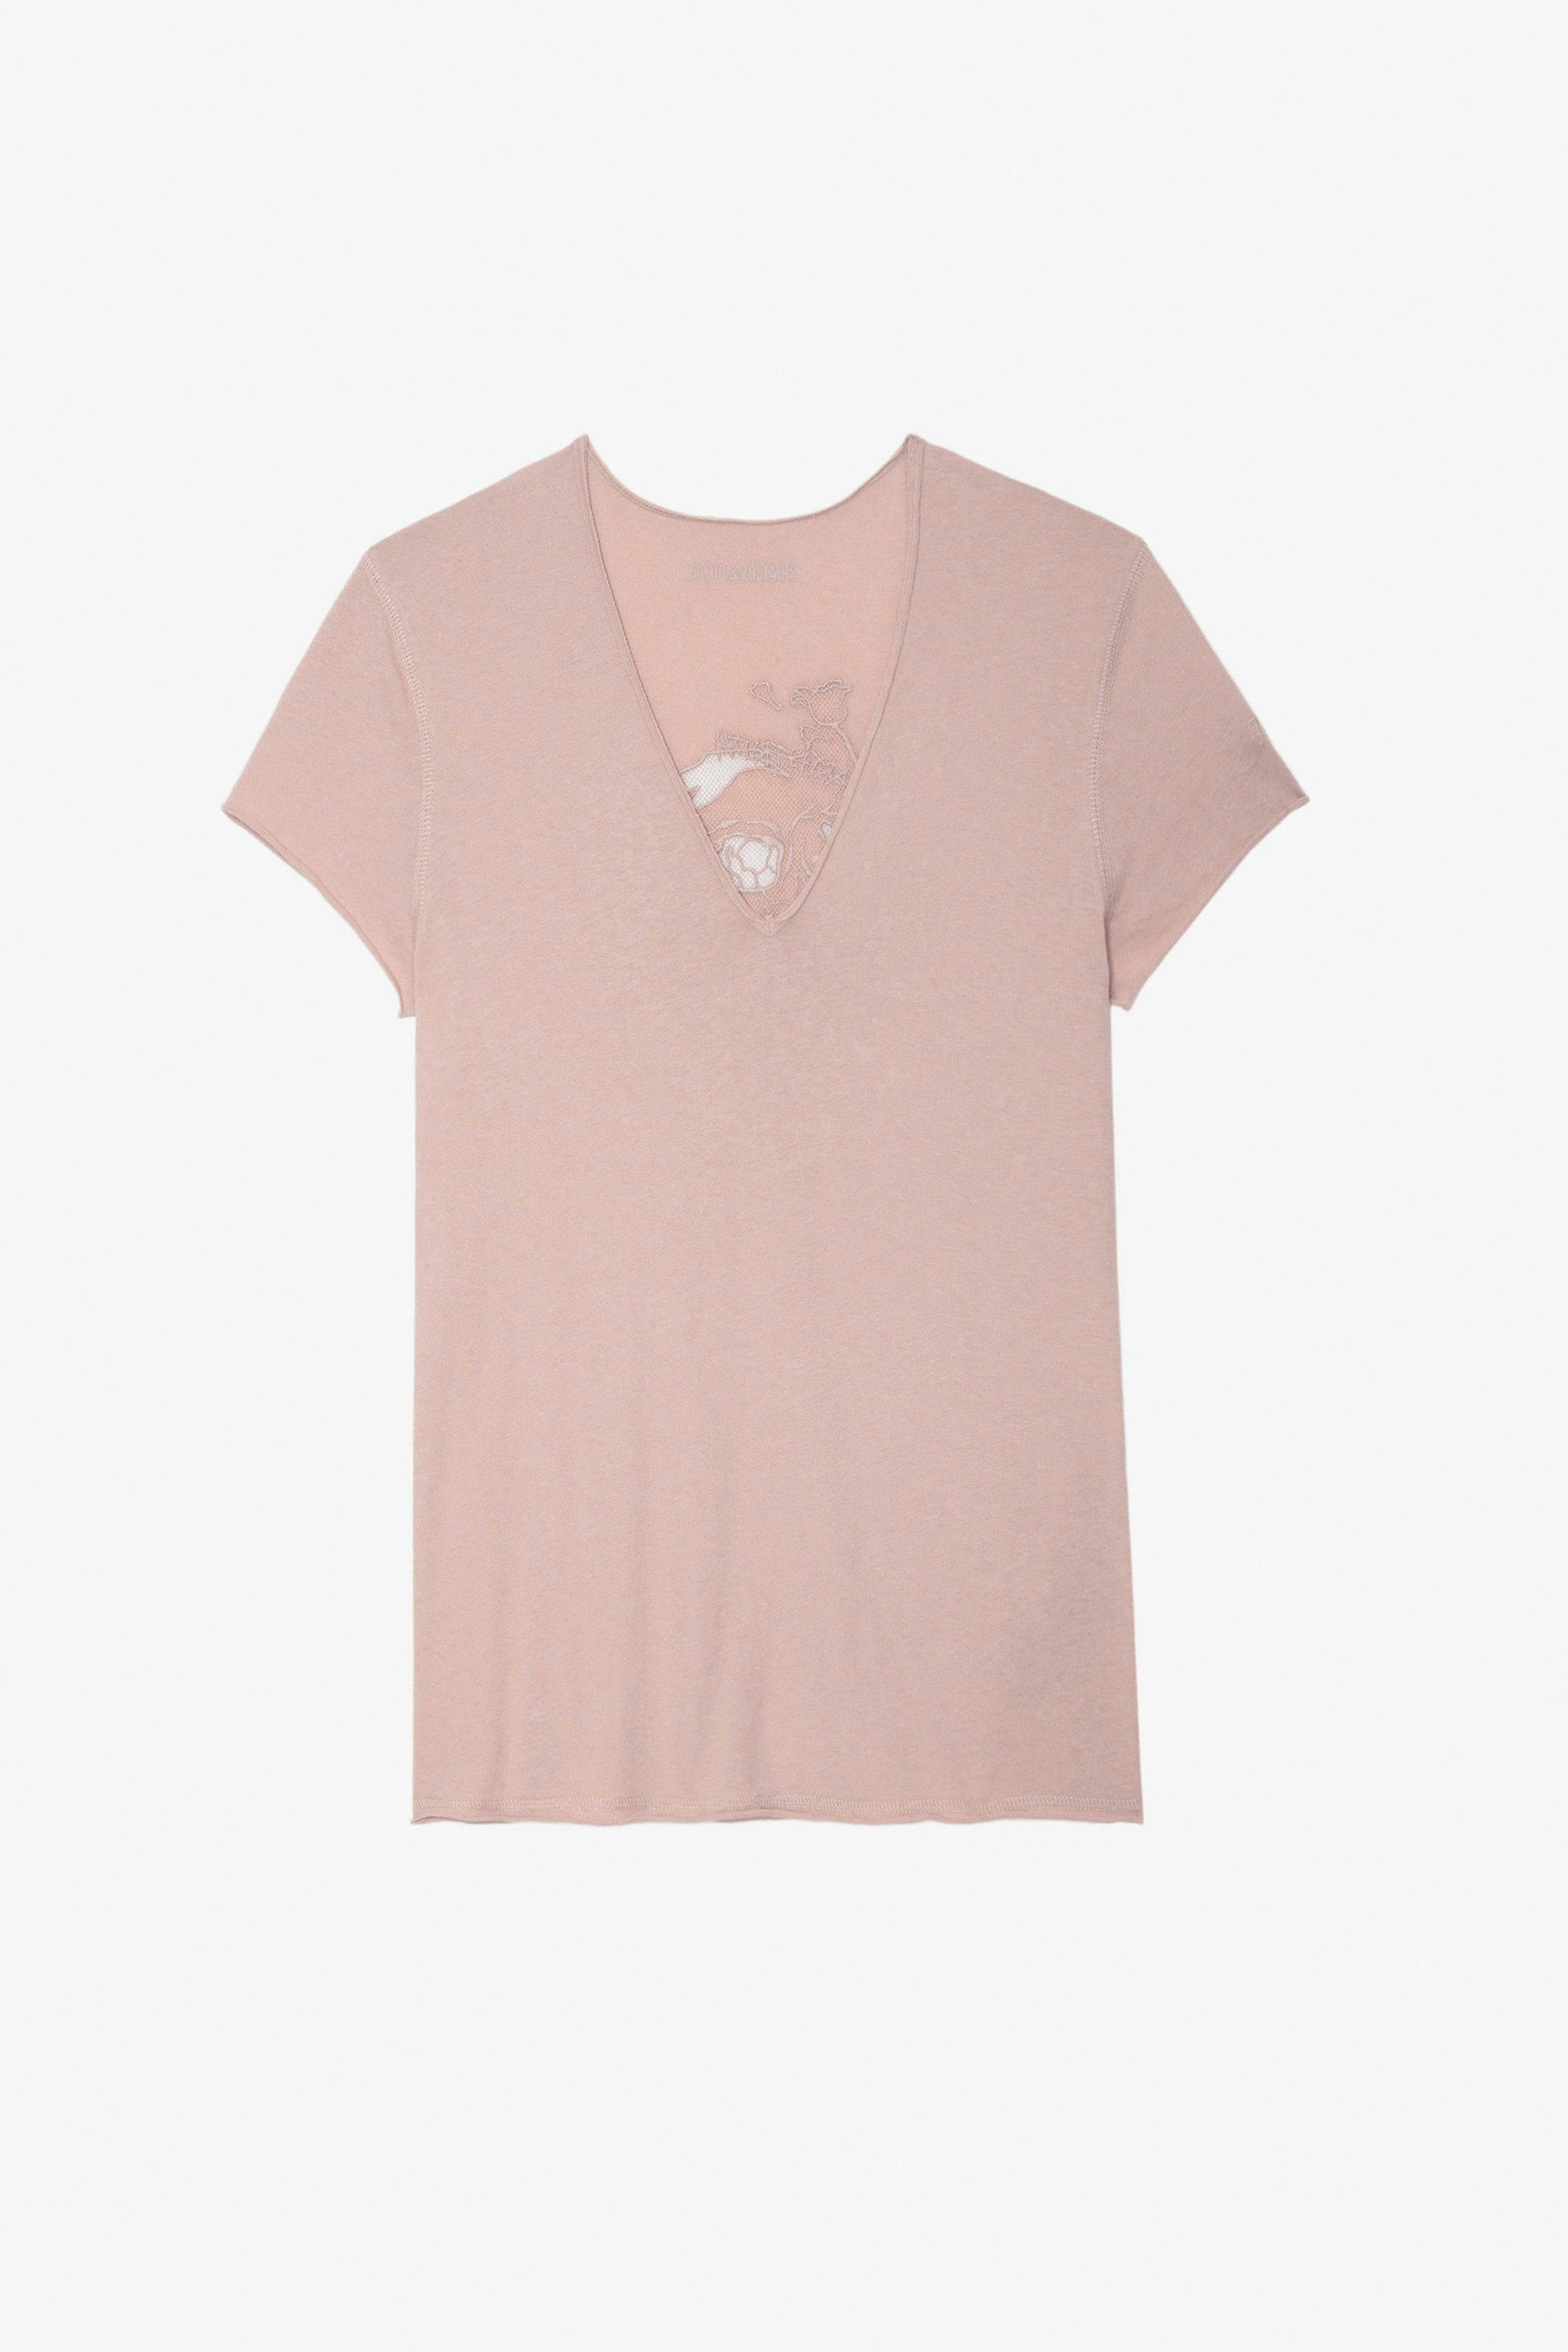 T-Shirt Story Fishnet - Damen-T-Shirt aus rosafarbener Baumwolle mit Totenkopfstickerei und Blumen auf der Rückseite